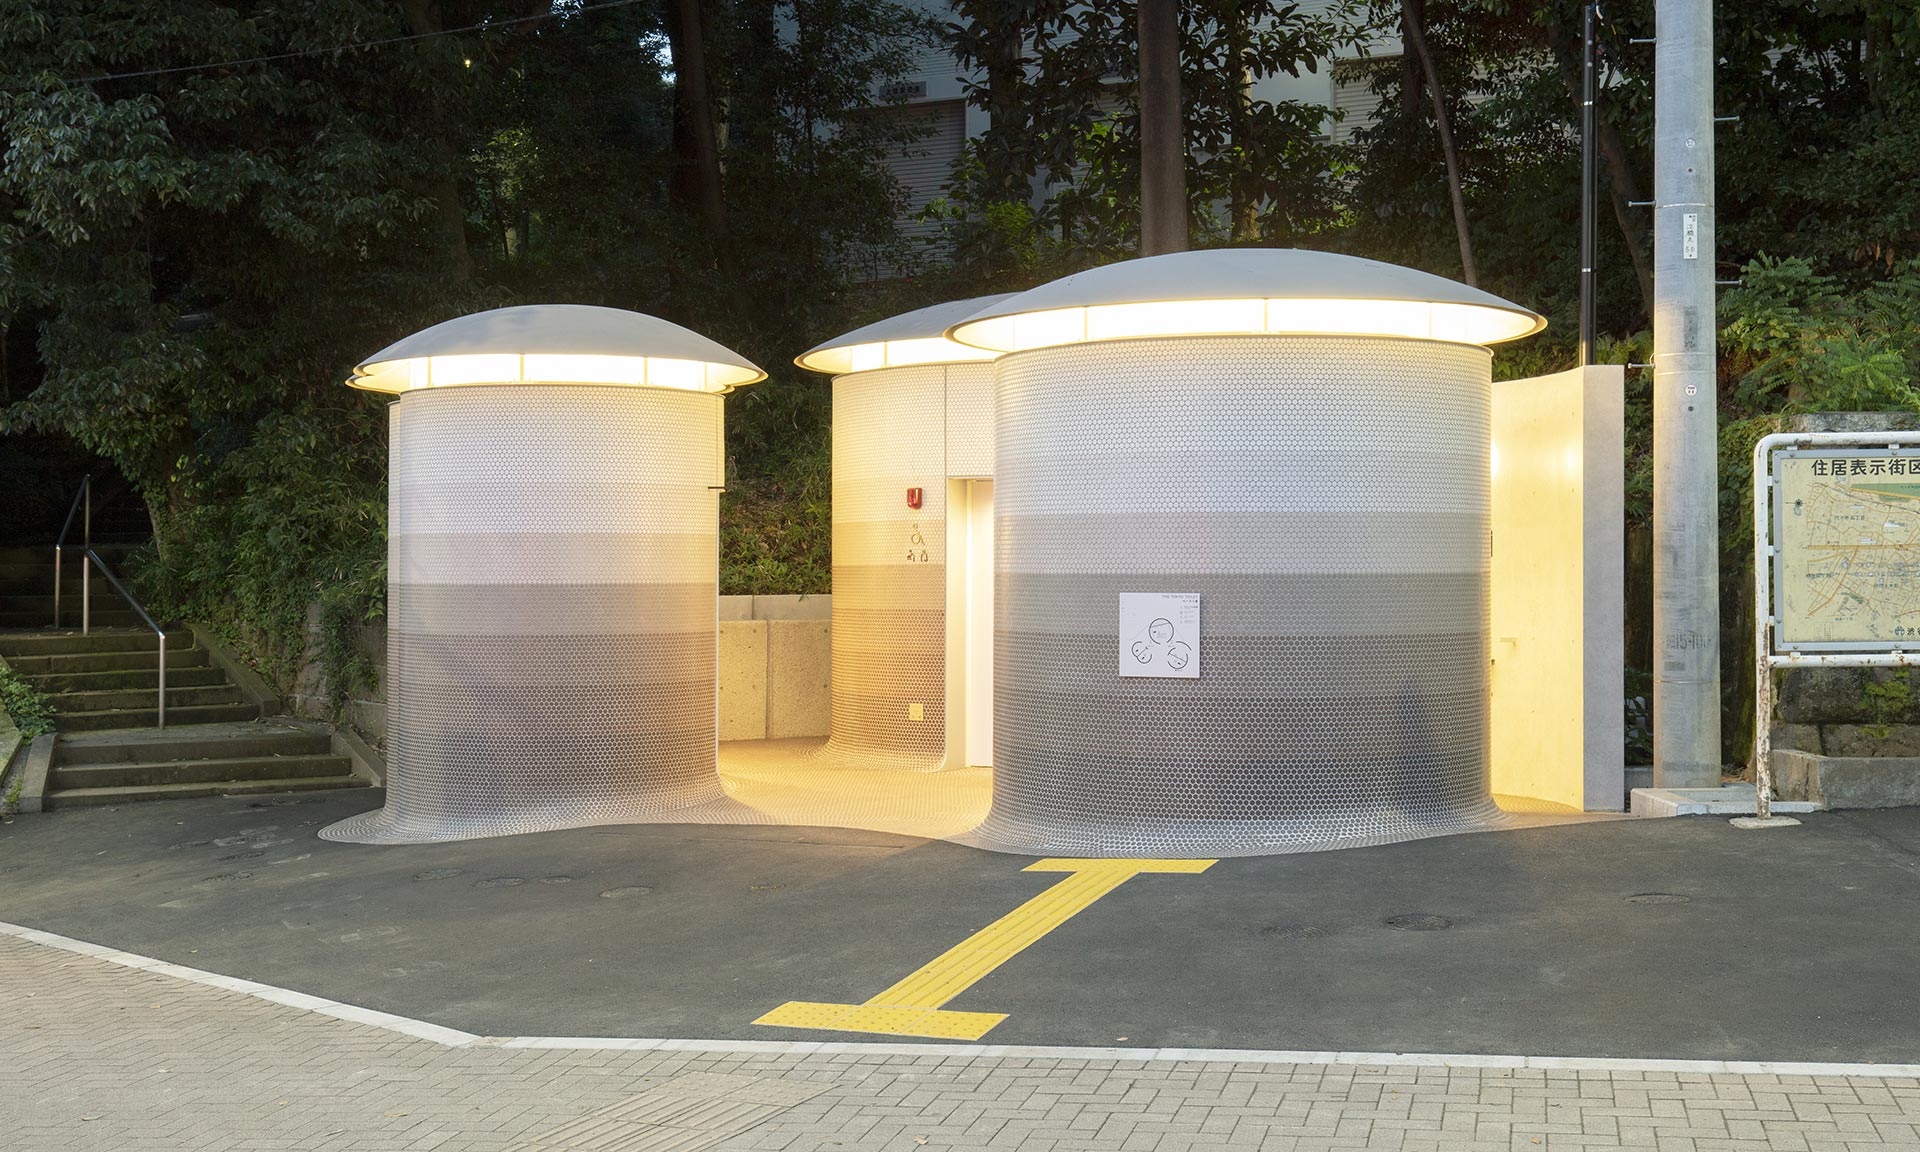 Toyo Ito postavil u parku v Tokiu veřejné toalety připomínající tři houby